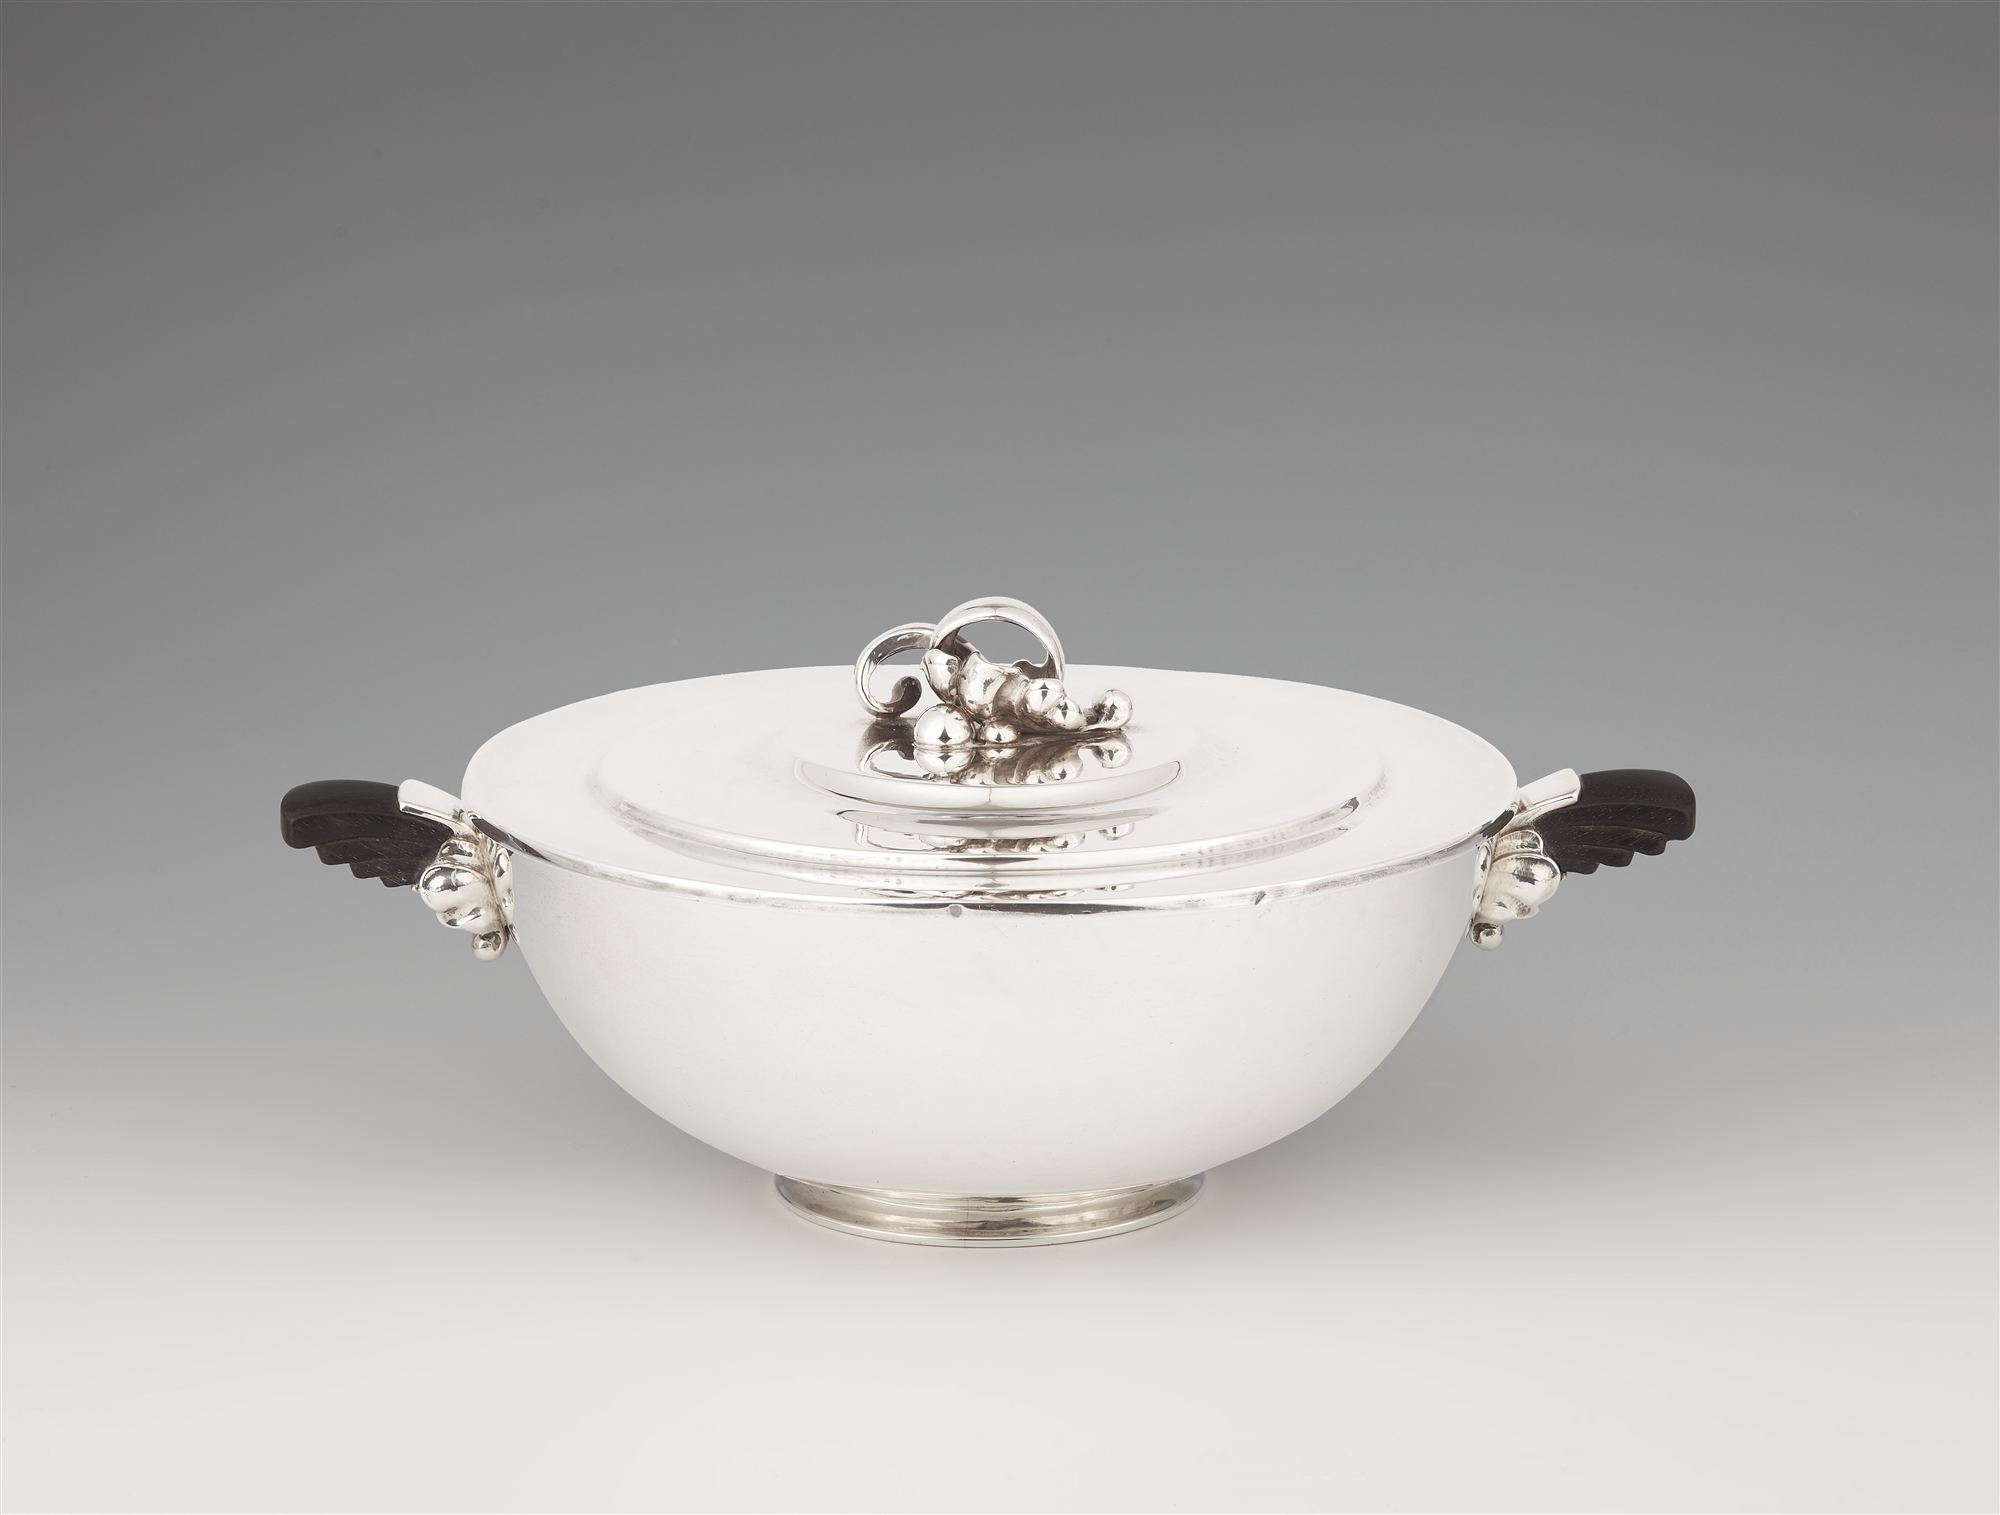 A Copenhagen silver dish and cover, model no. 547